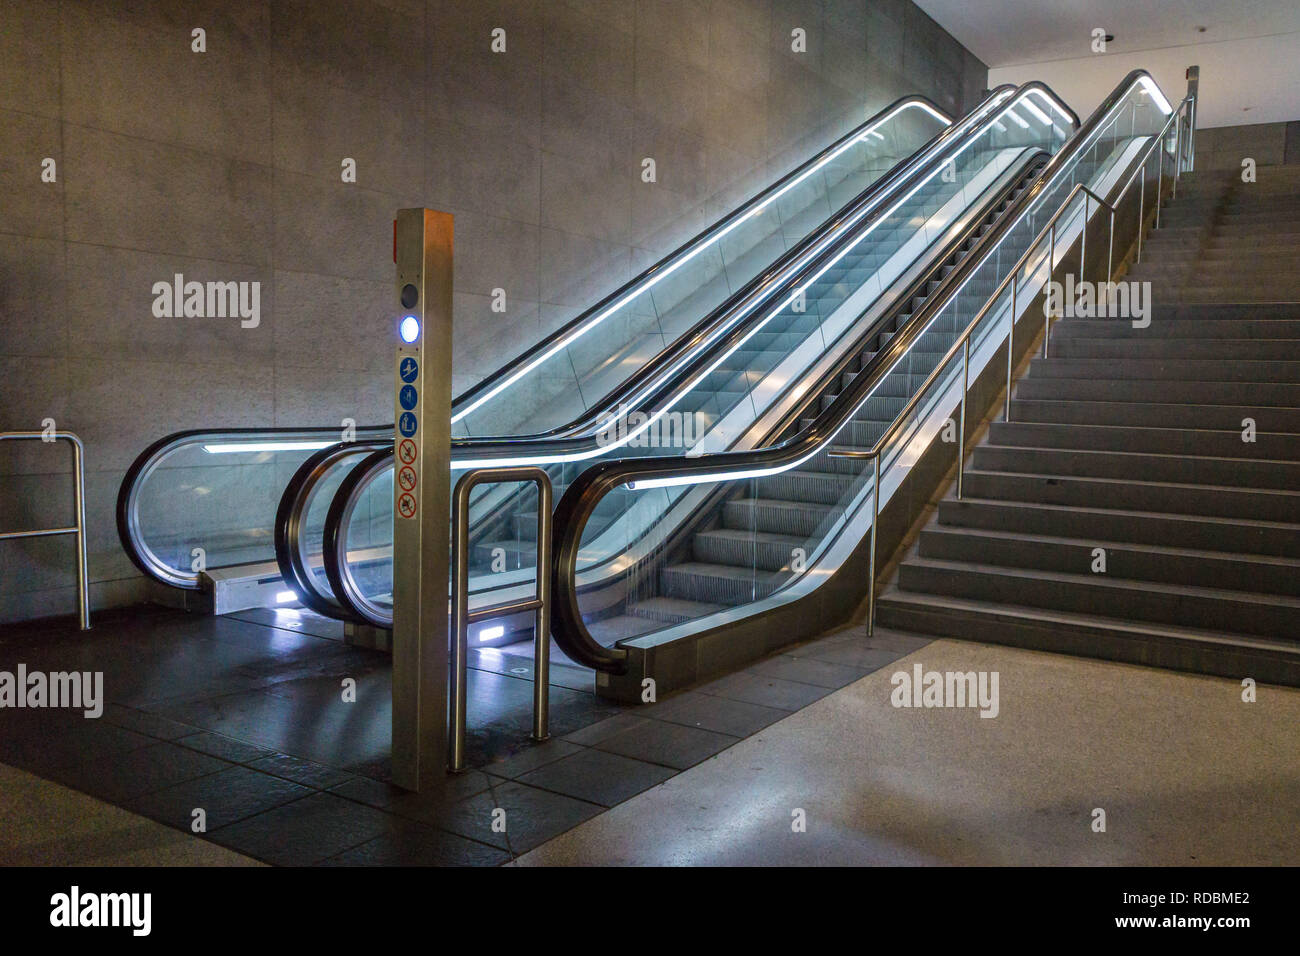 U-Bahn Fahrtreppen oder rollenden Treppen - Treppen Stockfoto